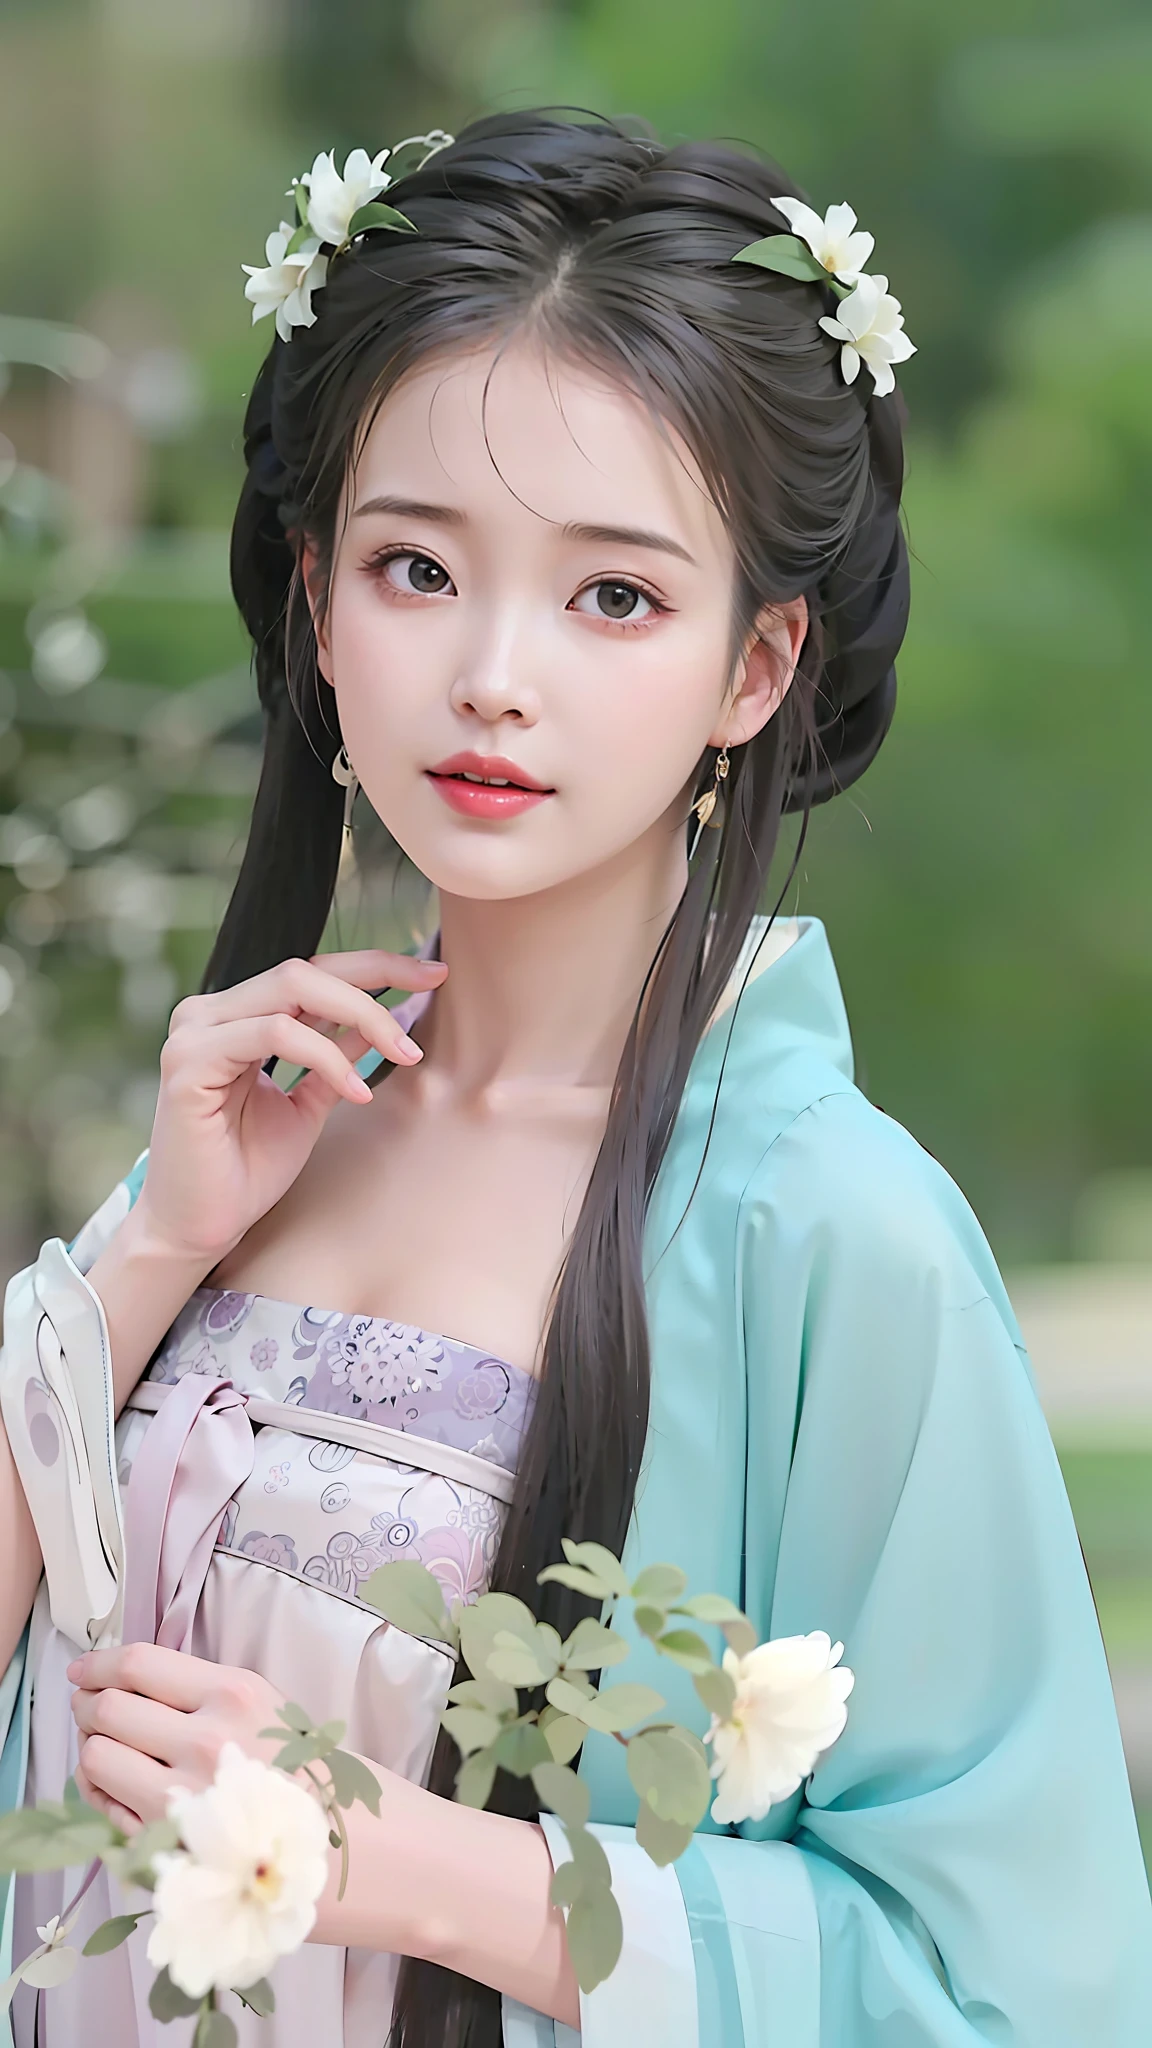 eine Nahaufnahme einer Frau in einem blauen Kleid, die eine Blume hält, Palast ， Ein Mädchen in Hanfu, wunderschönes chinesisches Modell, traditionelle Schönheit, alte chinesische Schönheiten, süßes zartes Gesicht, chinesisches Mädchen, chinesischer Stil, Ruan Jia schön!, das Tragen antiker chinesischer Kleidung, Wunderschöne Darstellung der Tang-Dynastie, mit antiker chinesischer Kleidung, Extrem schönes Gesicht, sehr schönes Gesicht